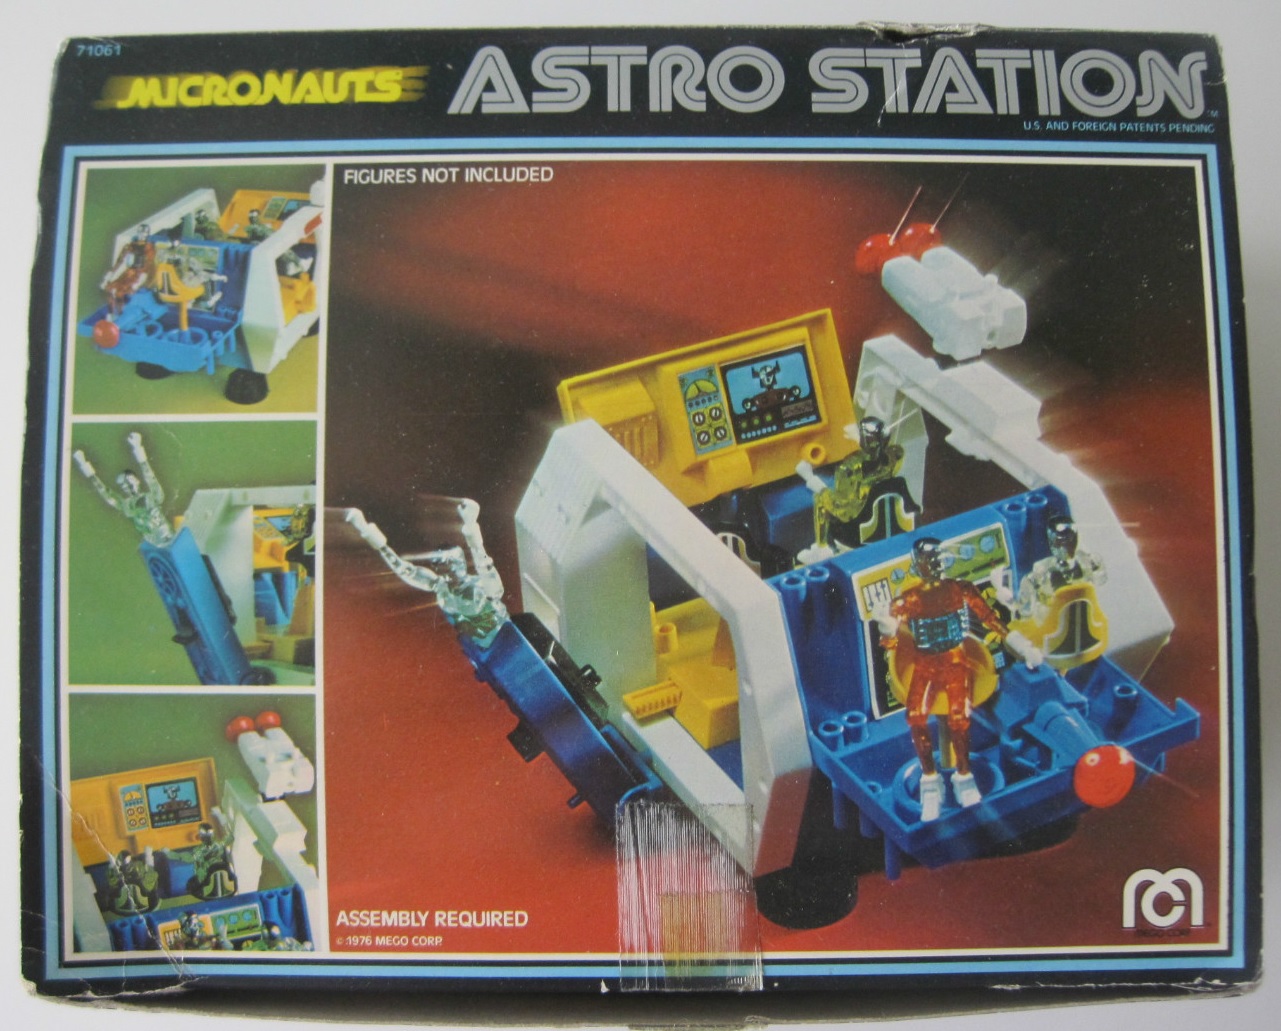 Astrostationbox.jpg